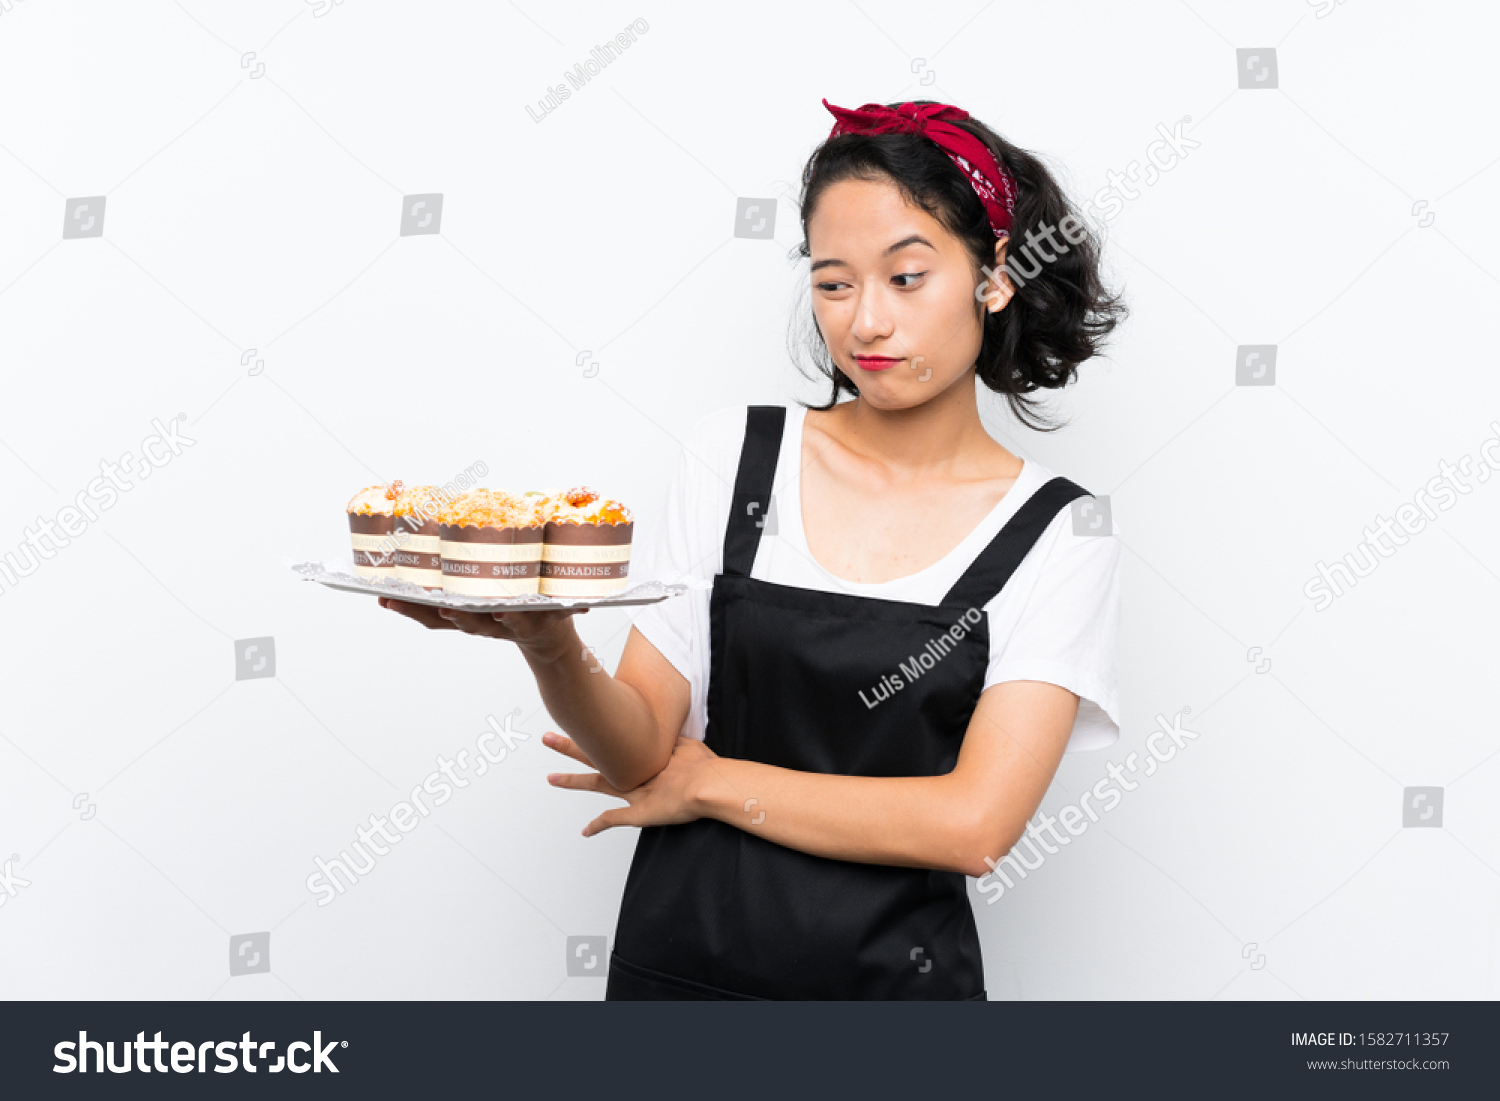 Девушка держит торт